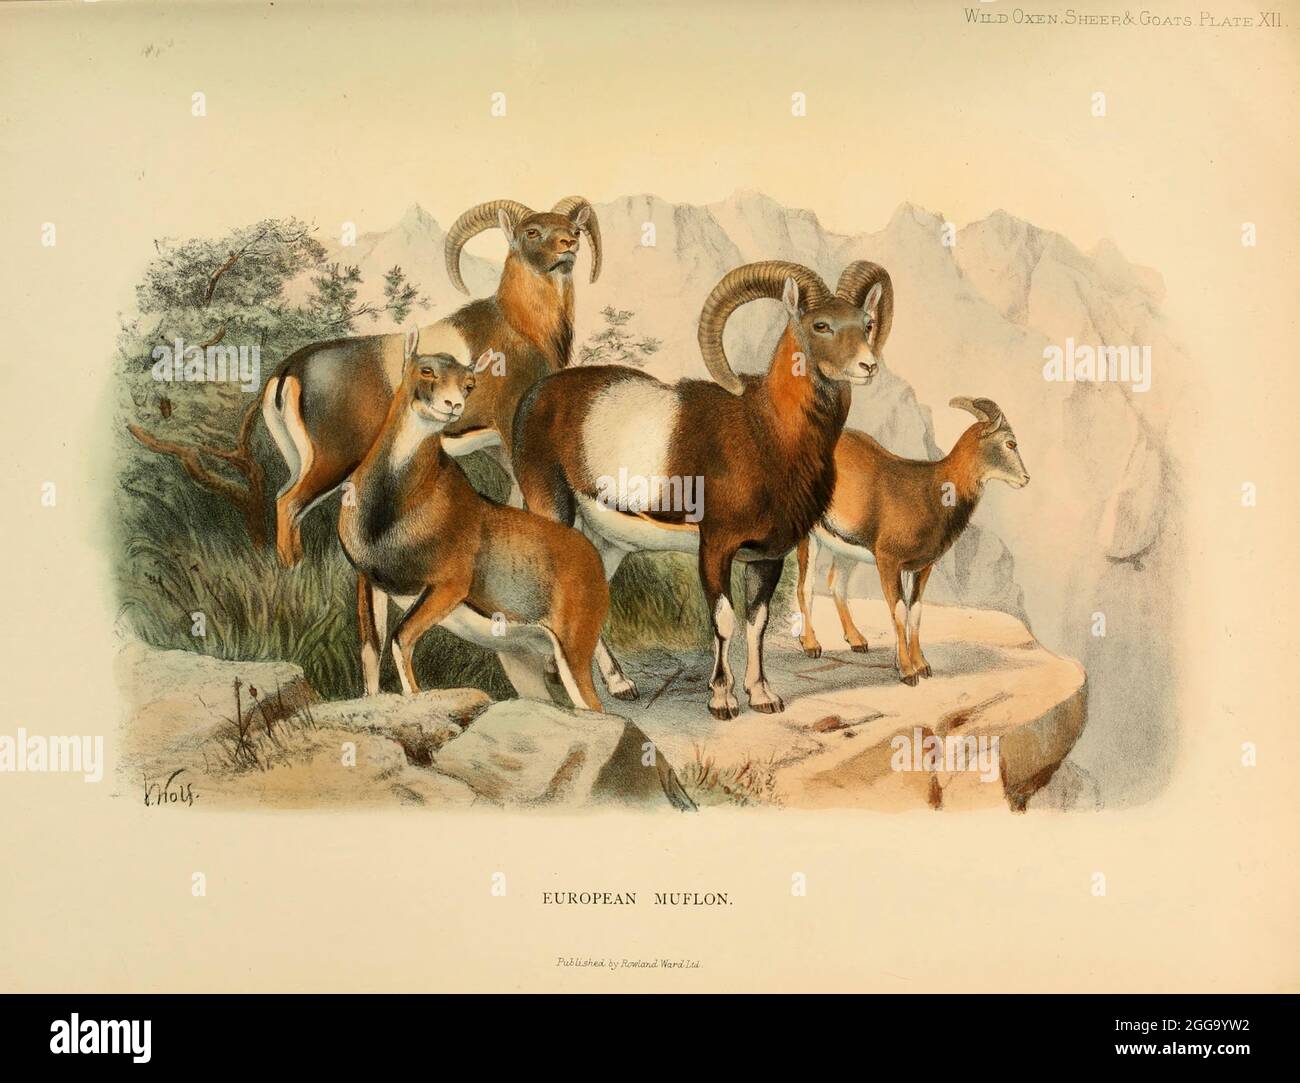 Le mouflon (Ovis gmelini) [ici comme Muflon européen Ovis musimon] est un mouton sauvage originaire de la région Caspienne, de l'est de la Turquie, de l'Arménie, de l'Azerbaïdjan à l'Iran. On pense que c'est l'ancêtre de toutes les races modernes de moutons domestiques. Illustration en couleur du livre ' Wild oxen, moutons & chèvres de toutes les terres, vivant et éteint ' par Richard Lydekker (1849-1915) publié en 1898 par Rowland Ward, Londres Banque D'Images